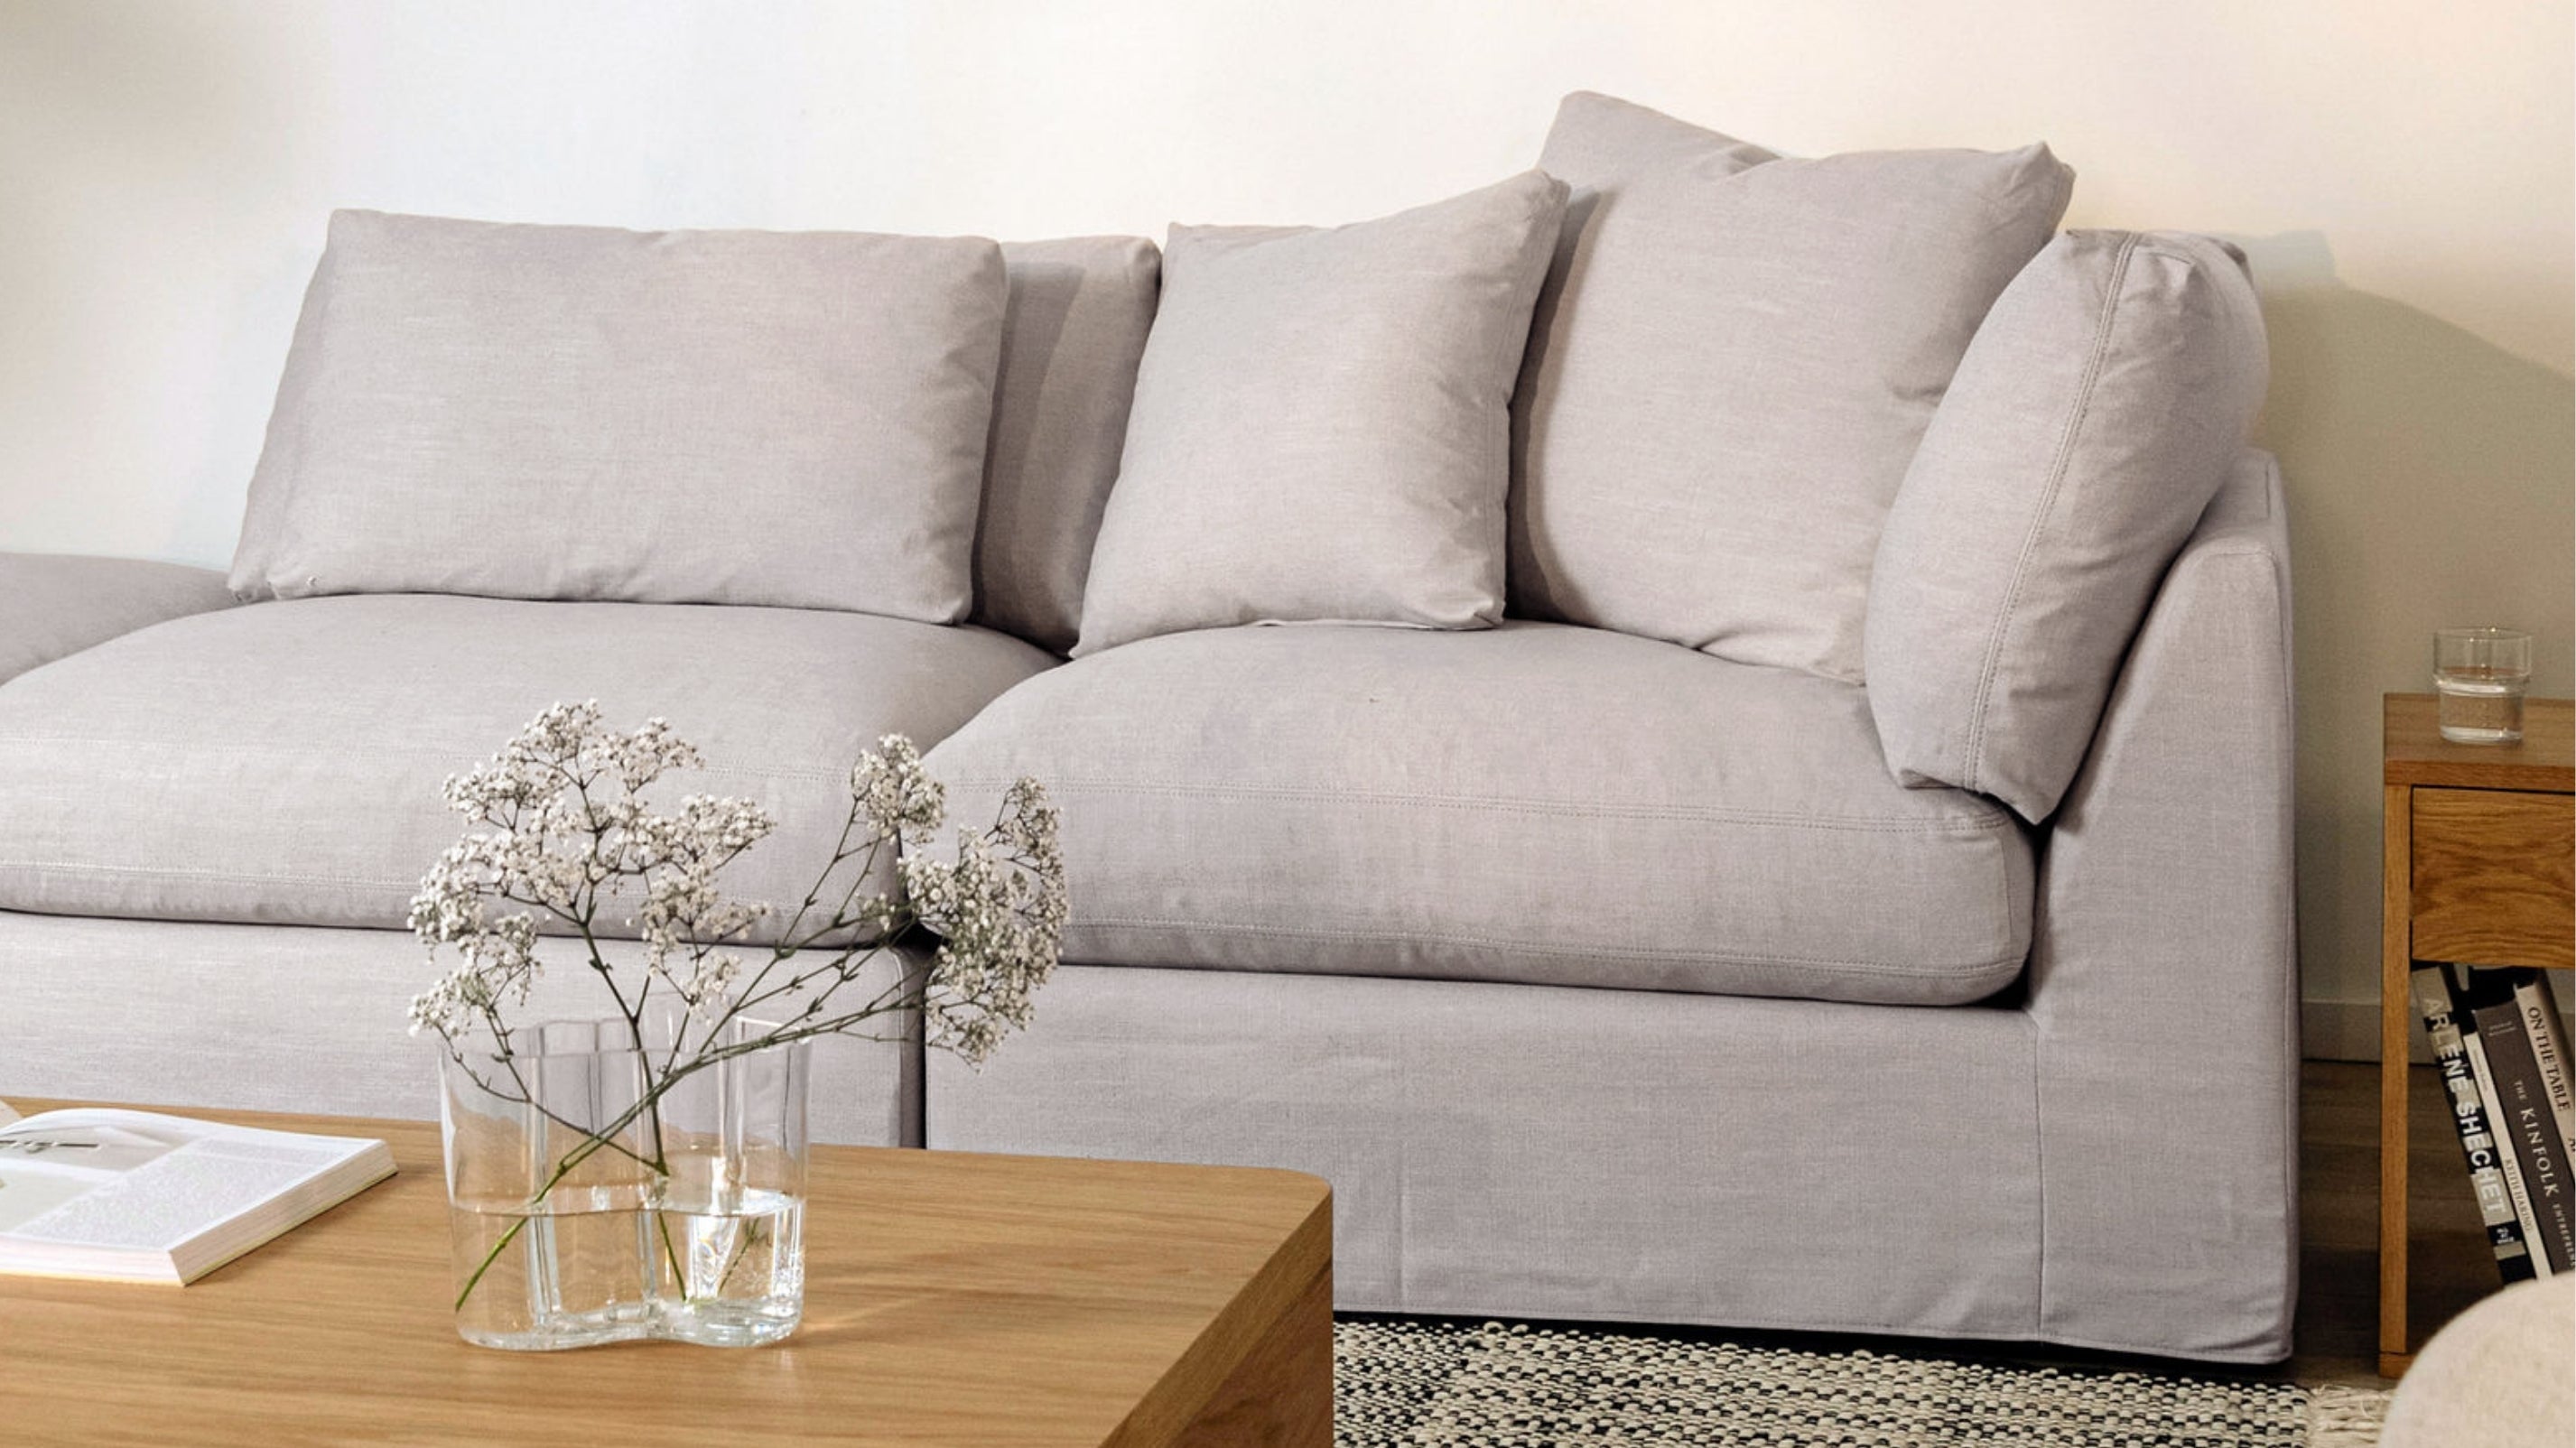 Get Together™ 3-Piece Modular Sofa, Large, Clay - Image 9